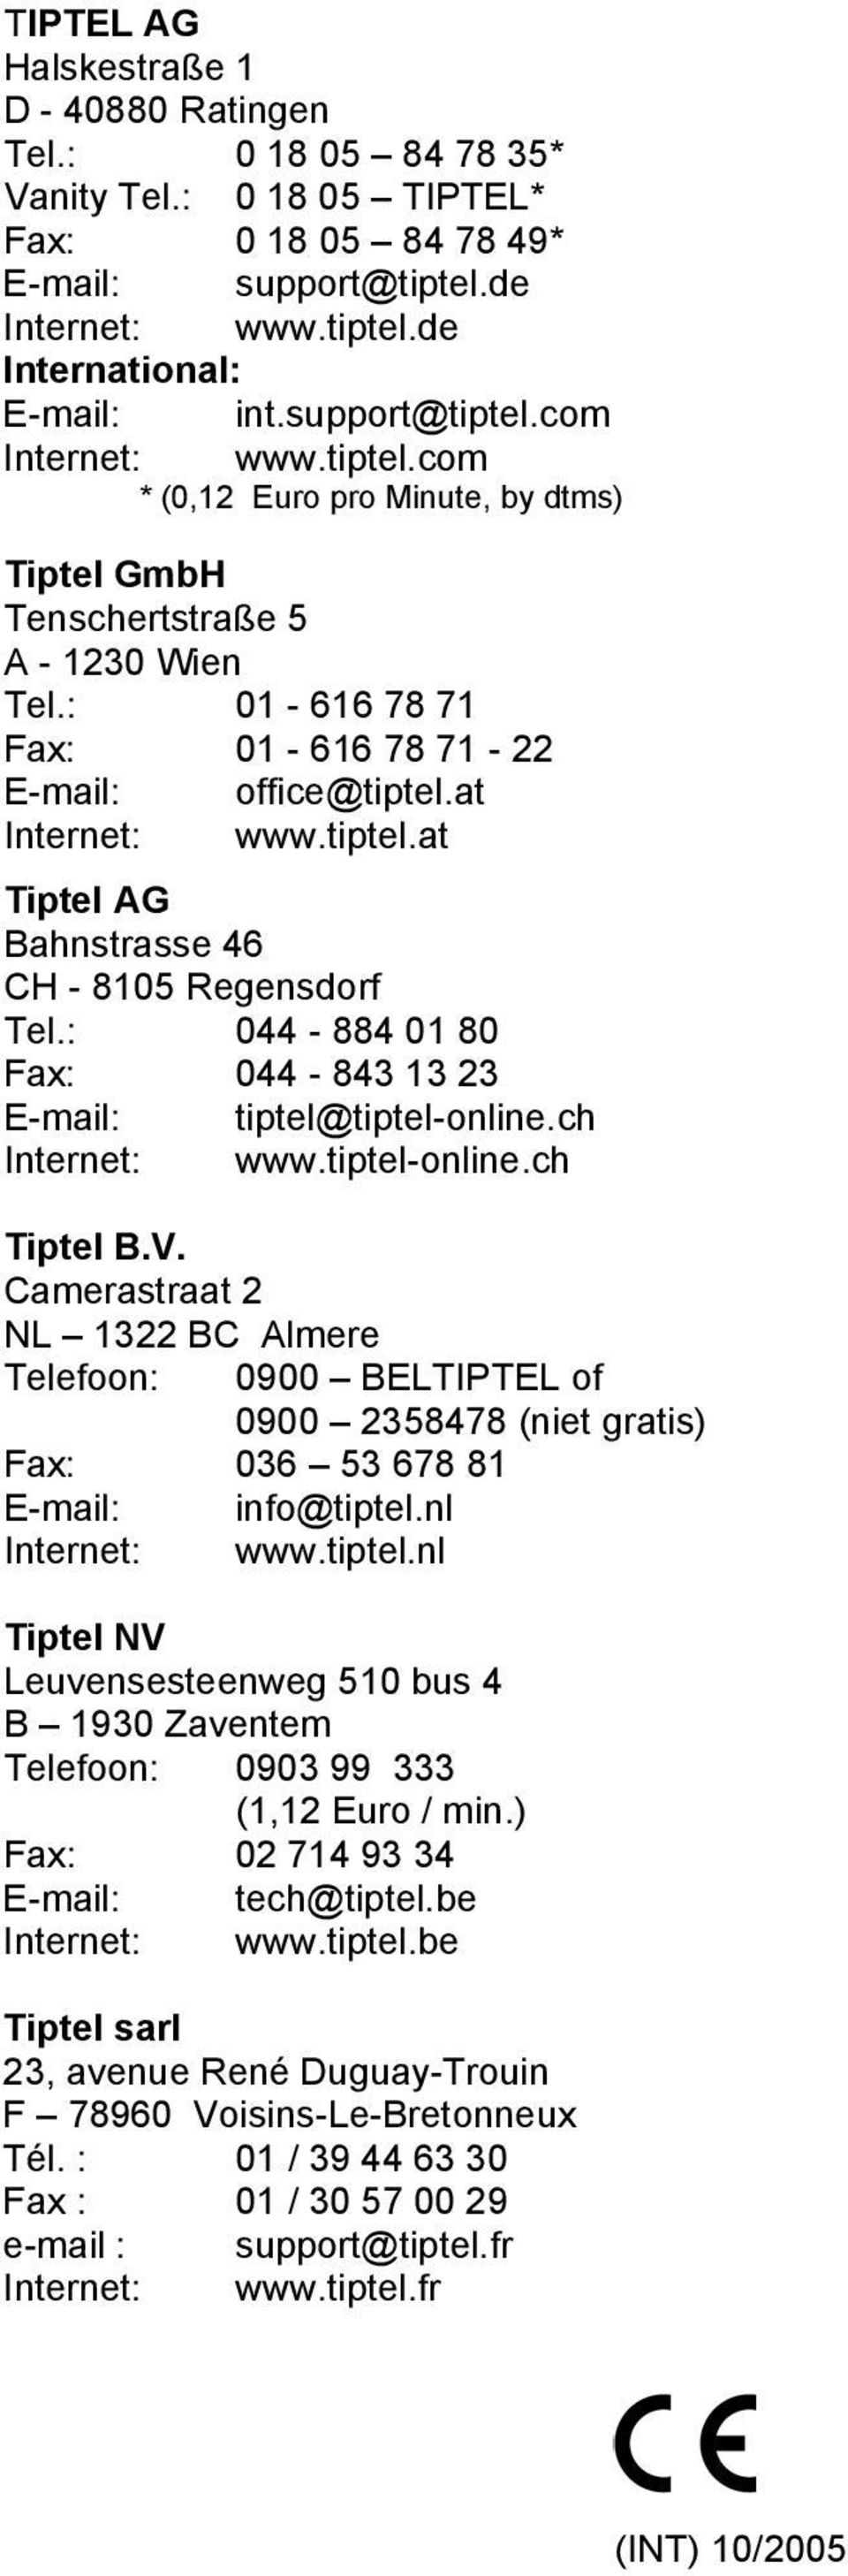 at Internet: www.tiptel.at Tiptel AG Bahnstrasse 46 CH - 8105 Regensdorf Tel.: 044-884 01 80 Fax: 044-843 13 23 E-mail: tiptel@tiptel-online.ch Internet: www.tiptel-online.ch Tiptel B.V.